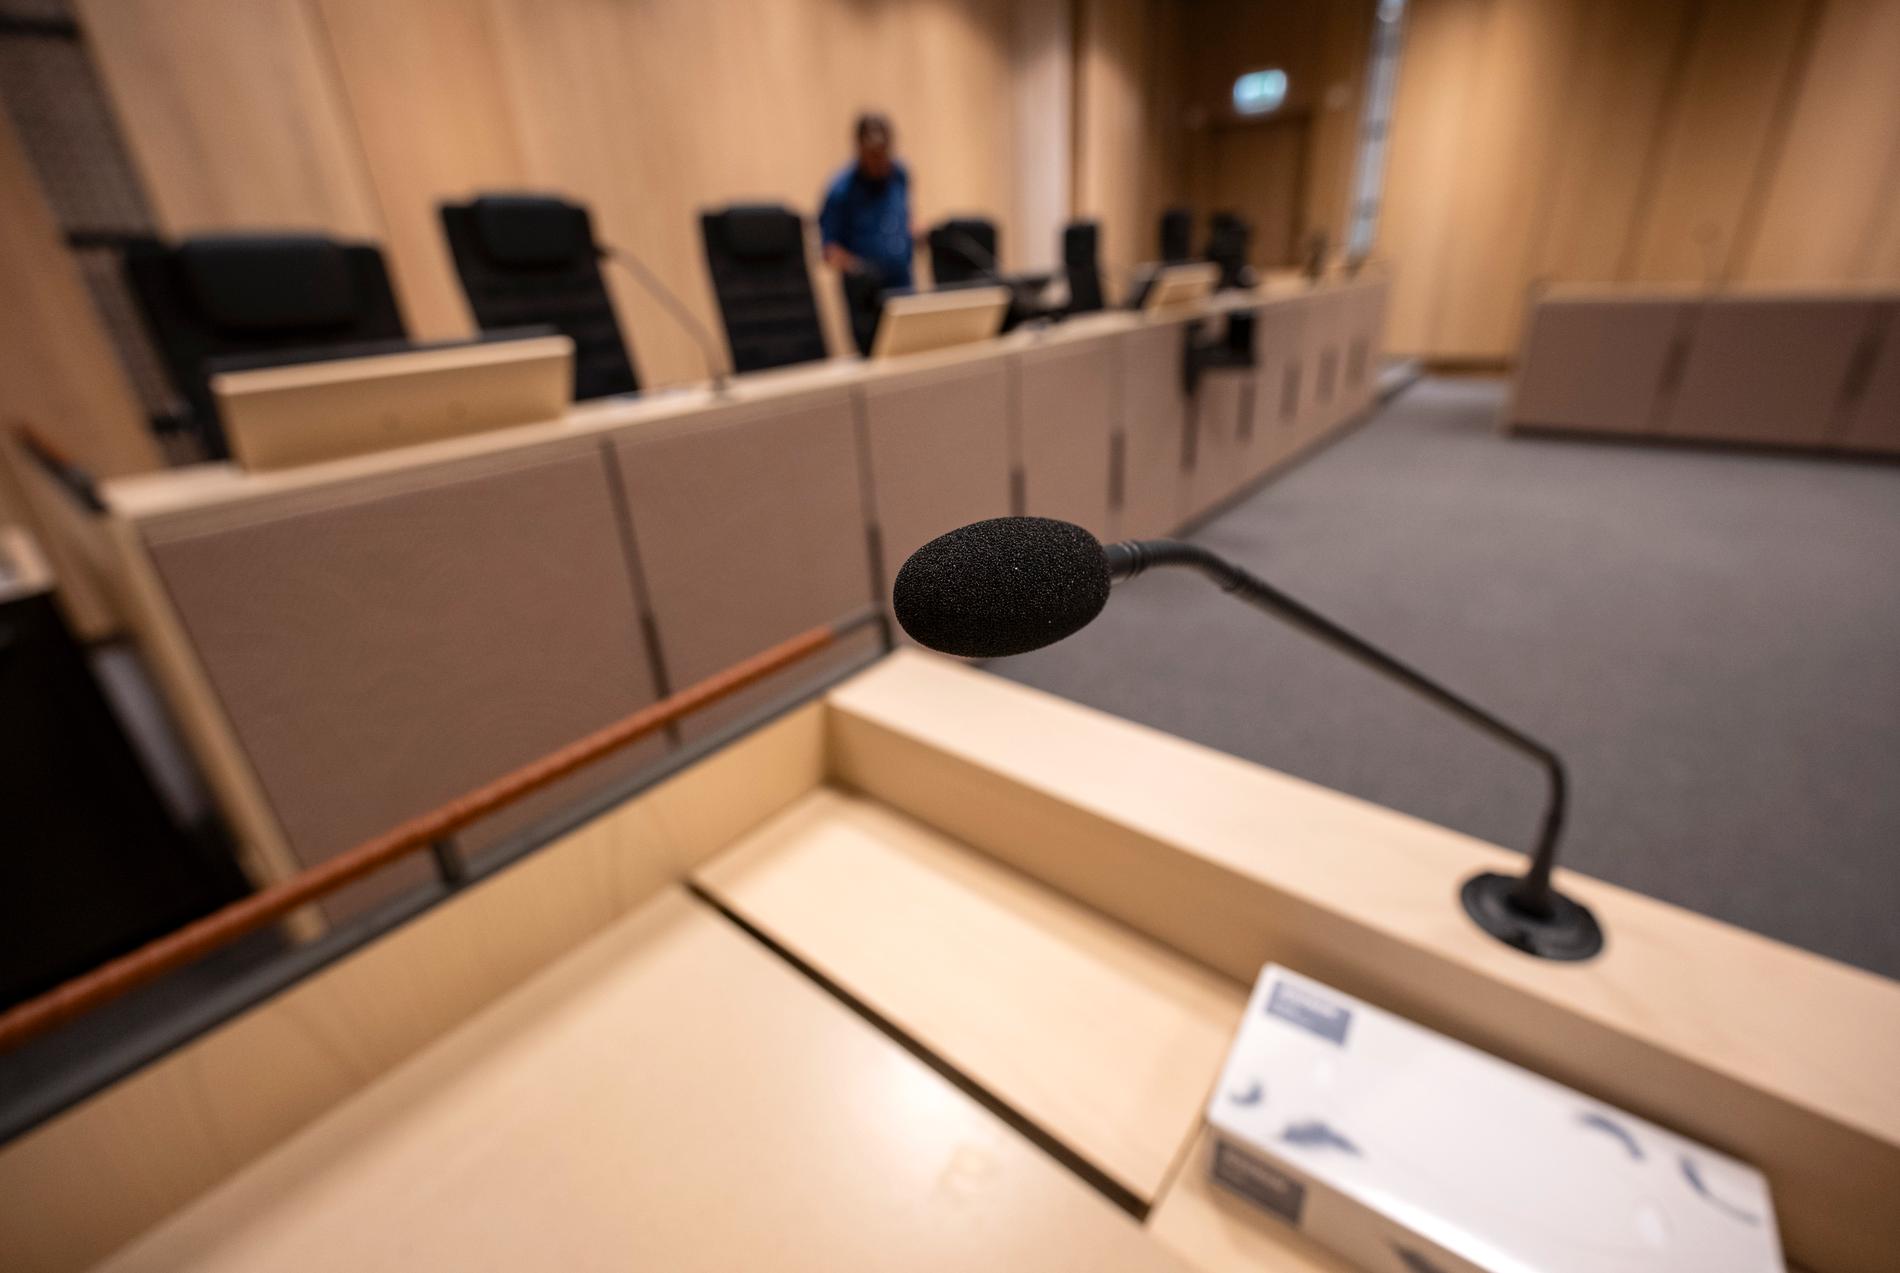 Prime crime uppger att man publicerar ljudfiler från minst tio nya rättegångar varje vecka, året runt. Bild från rättssal i Malmö tingsrätt. Arkivbild.